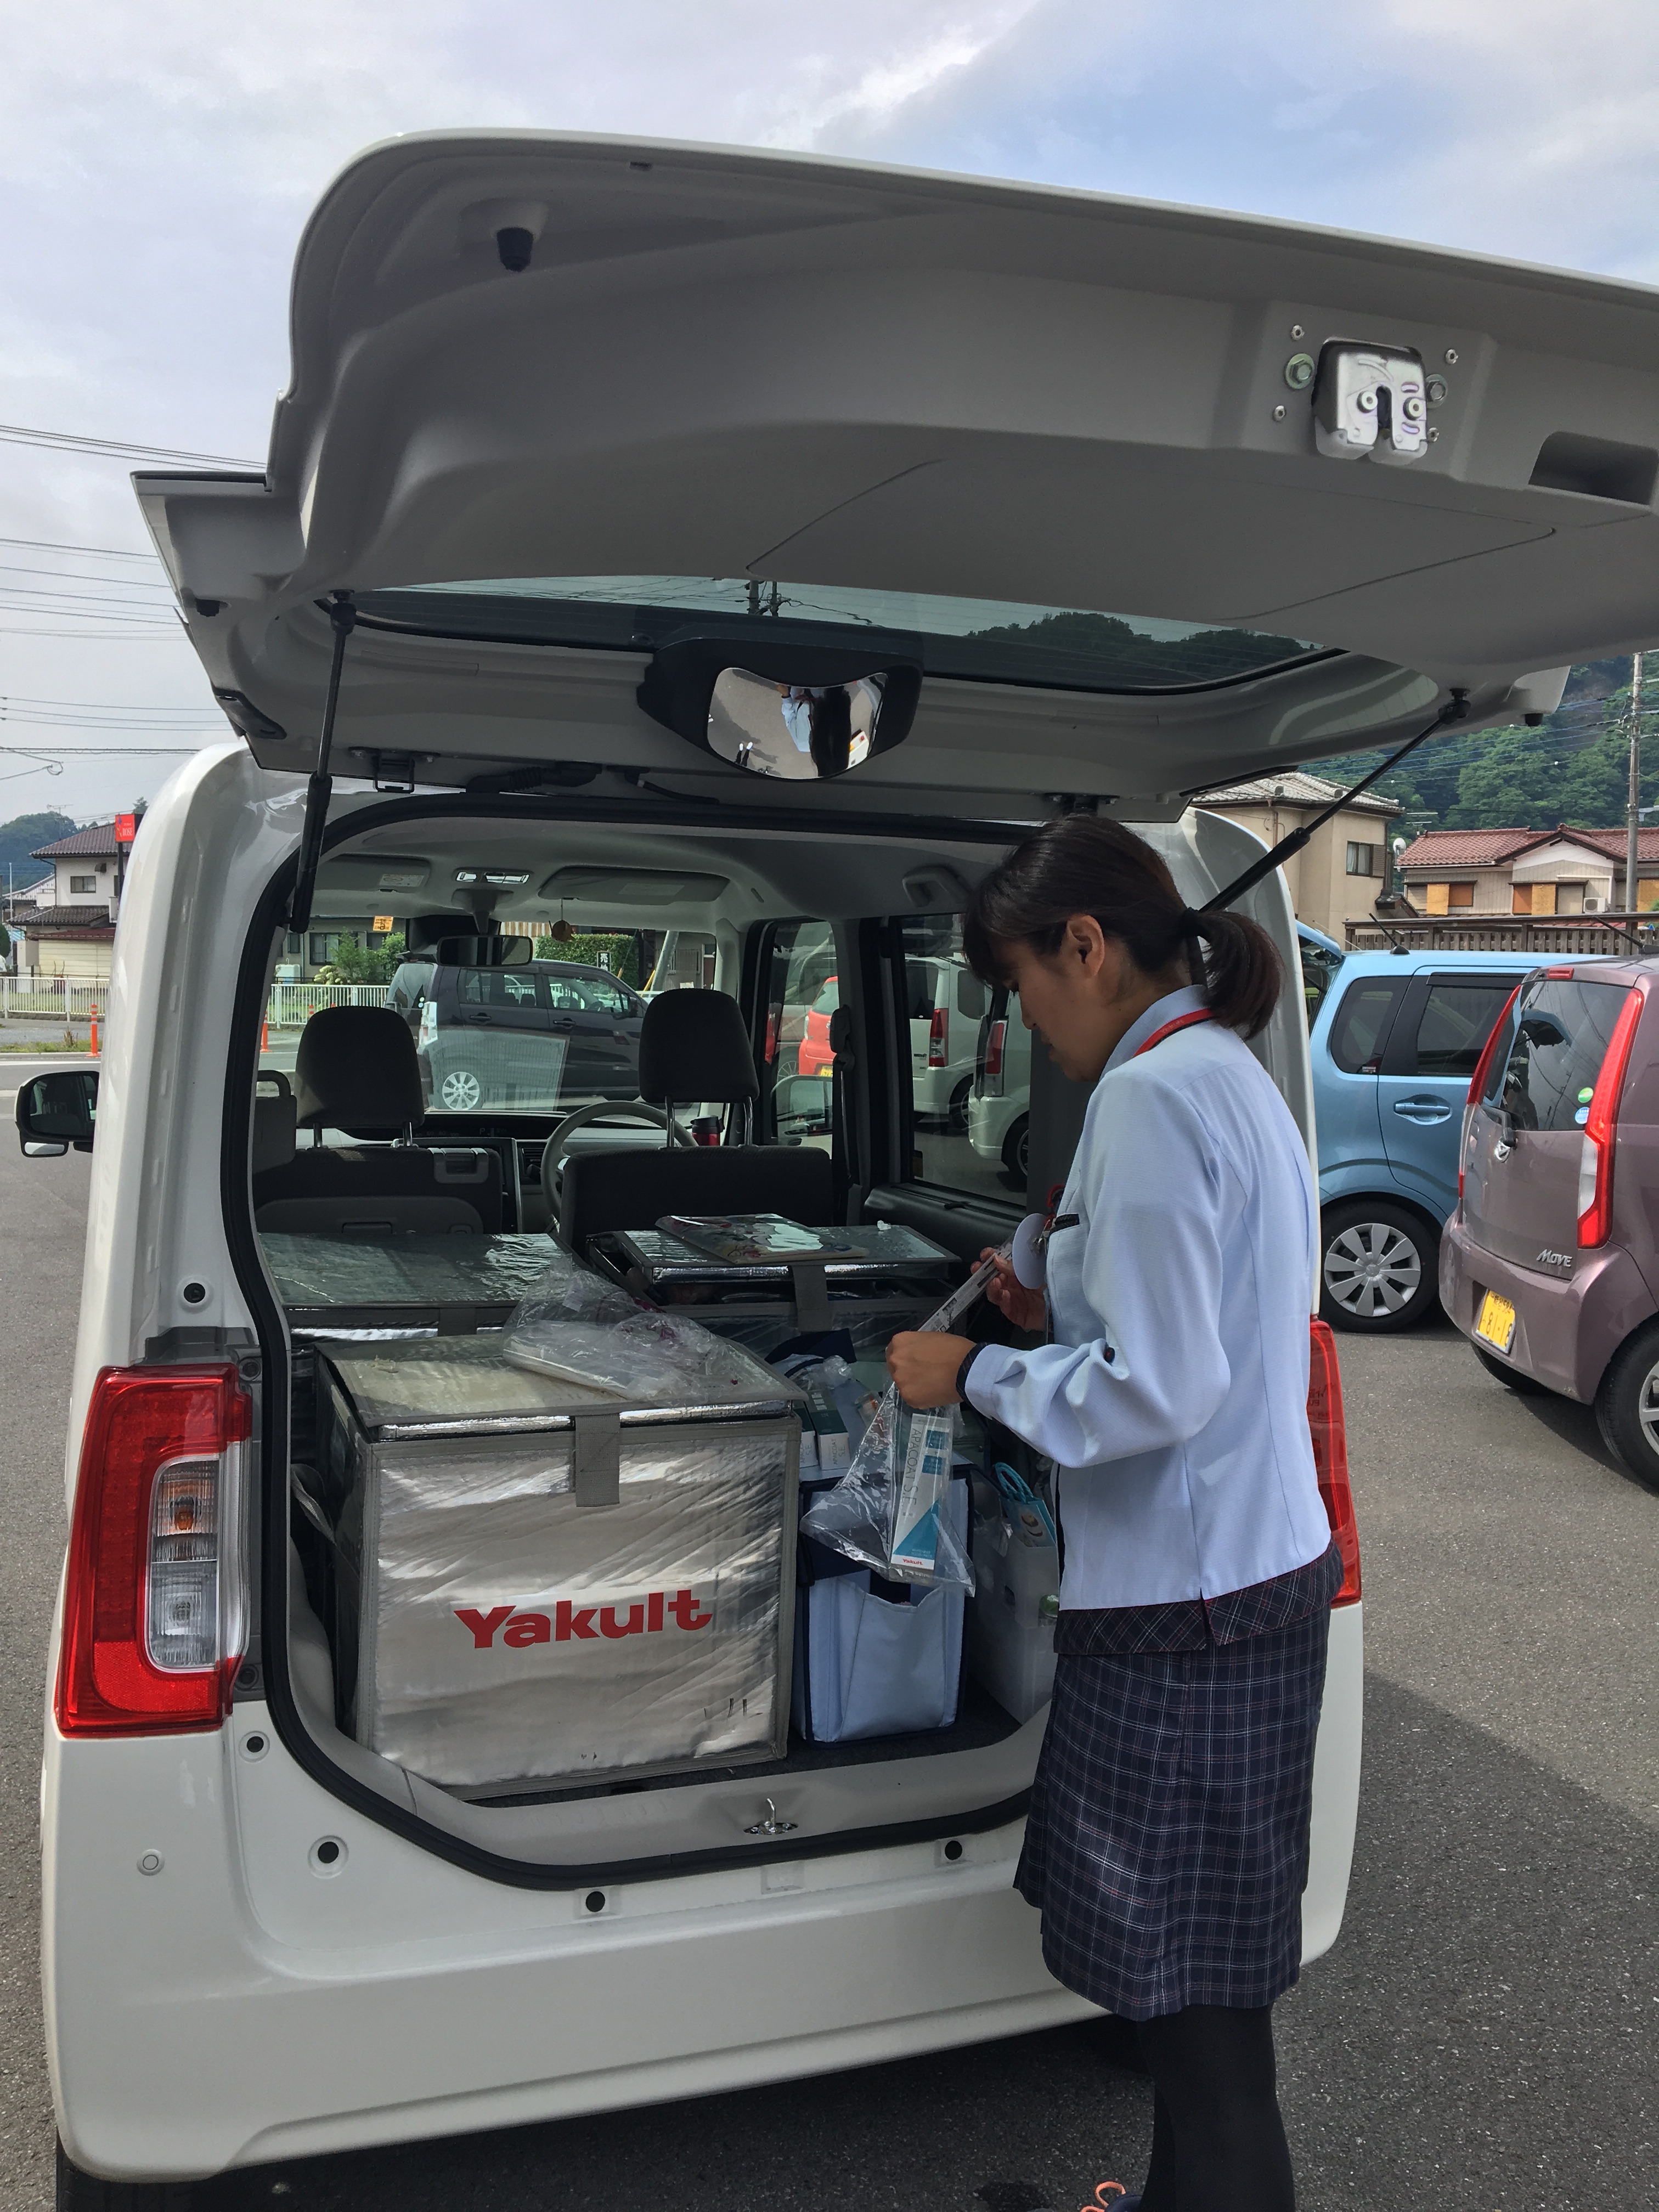 社用車 ダイハツタントがやってきた 埼玉北部ヤクルト販売 イベント ニュース